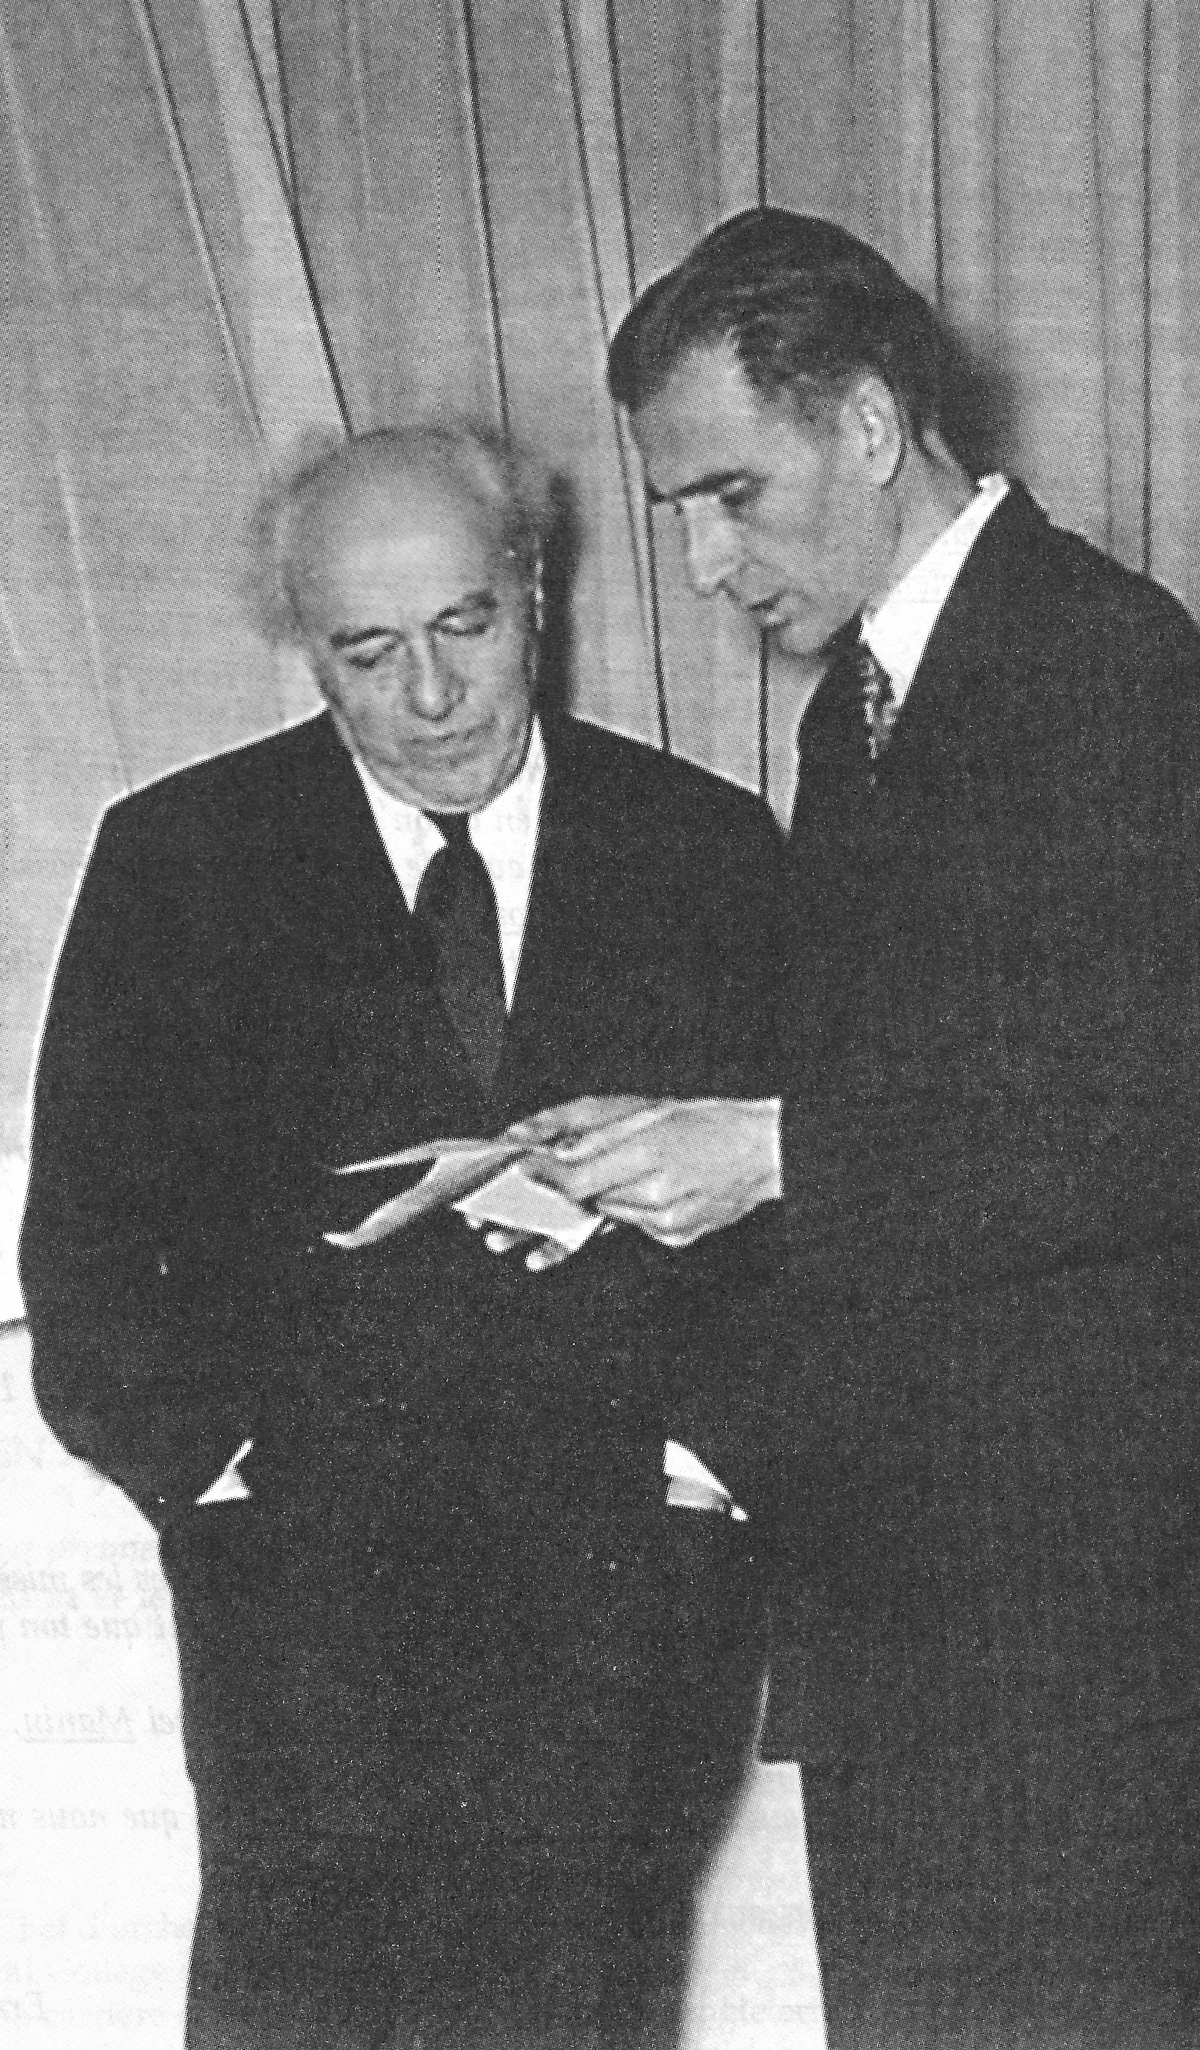 Ernest BLOCH en discussion avec Franz WALTER, 1949, Genève, Archives de la Radio Suisse Romande, photographe inconnu